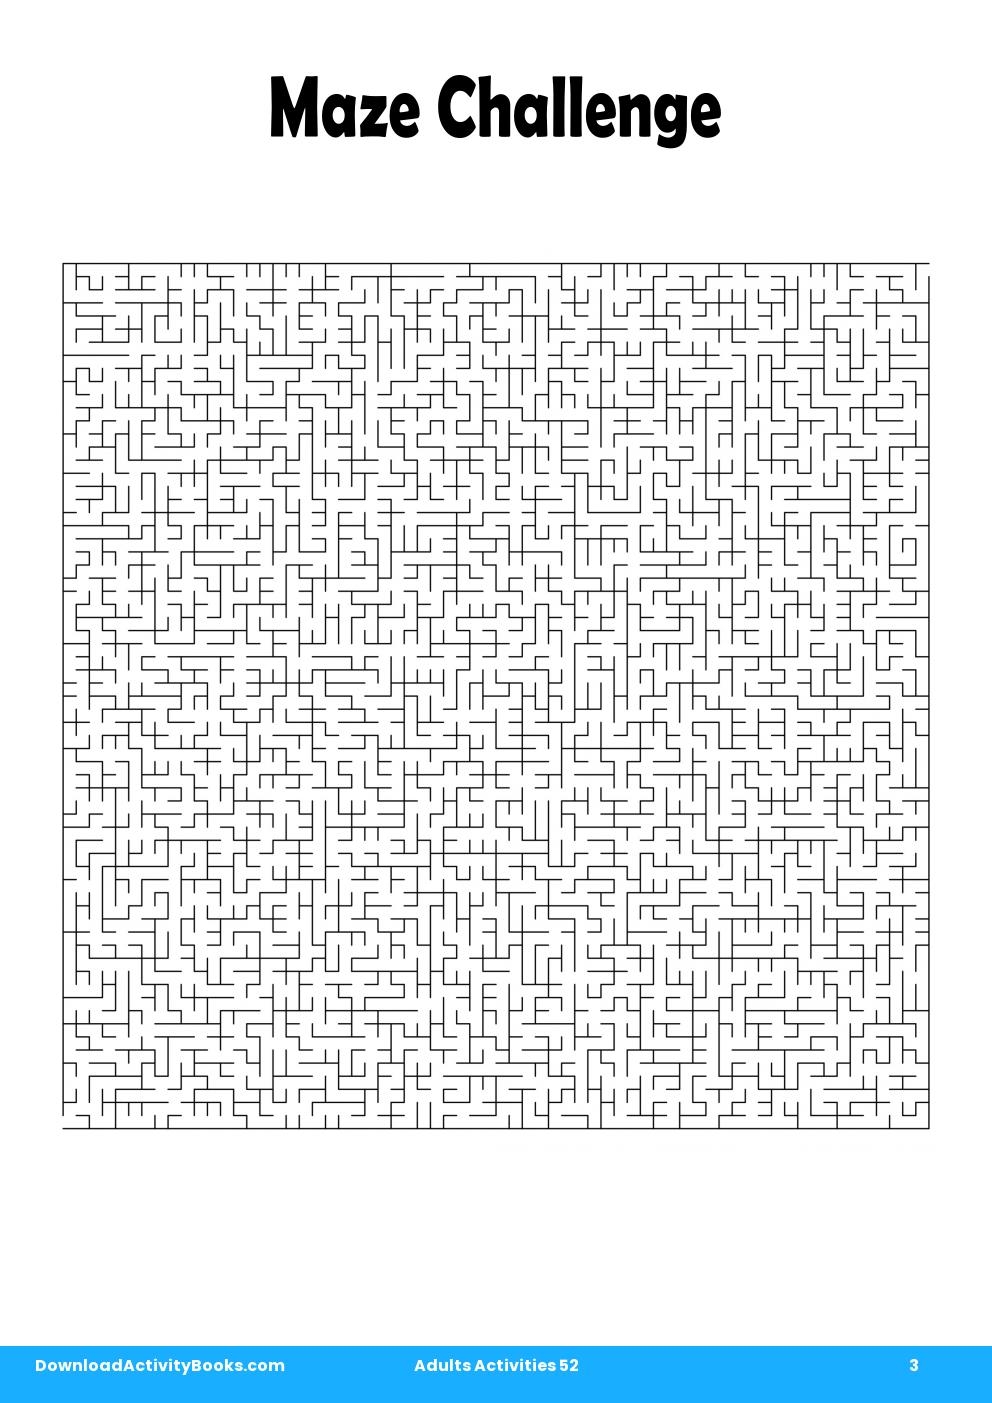 Maze Challenge in Adults Activities 52